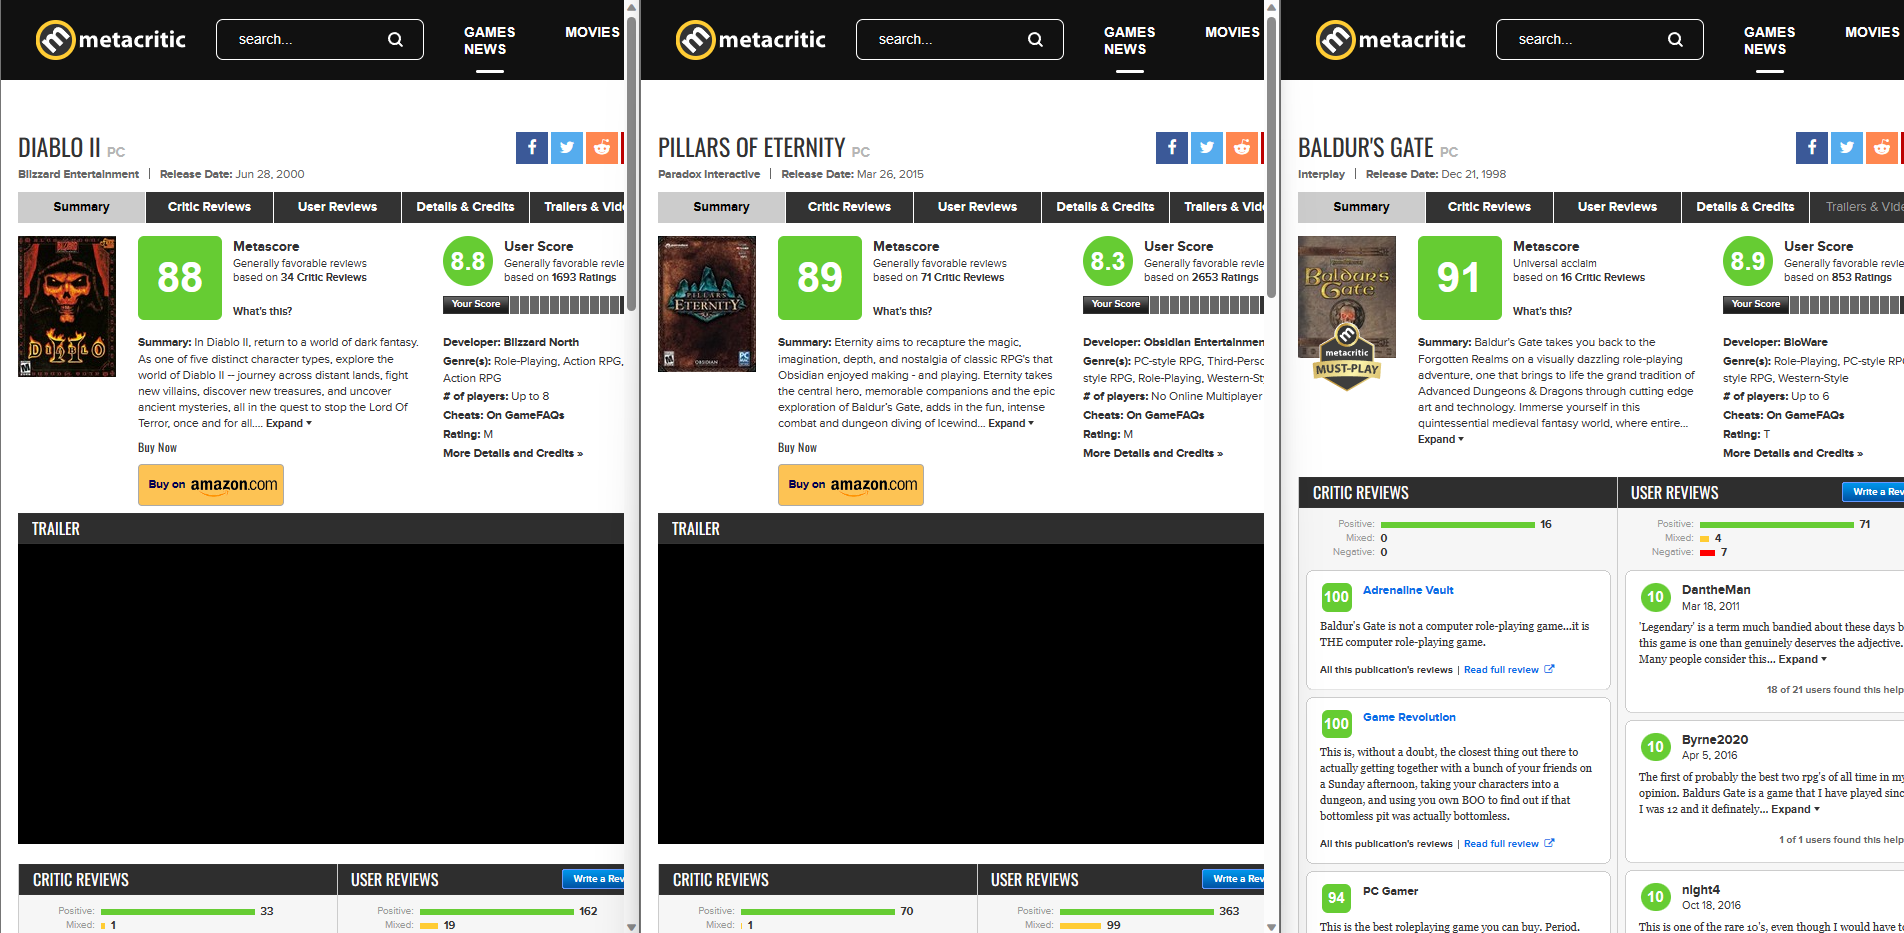 Notas dos games Diablo 2 Pillars of Eternity e Baldur's Gate, respectivamente, da esquerda para a direita, no site Metacritic.